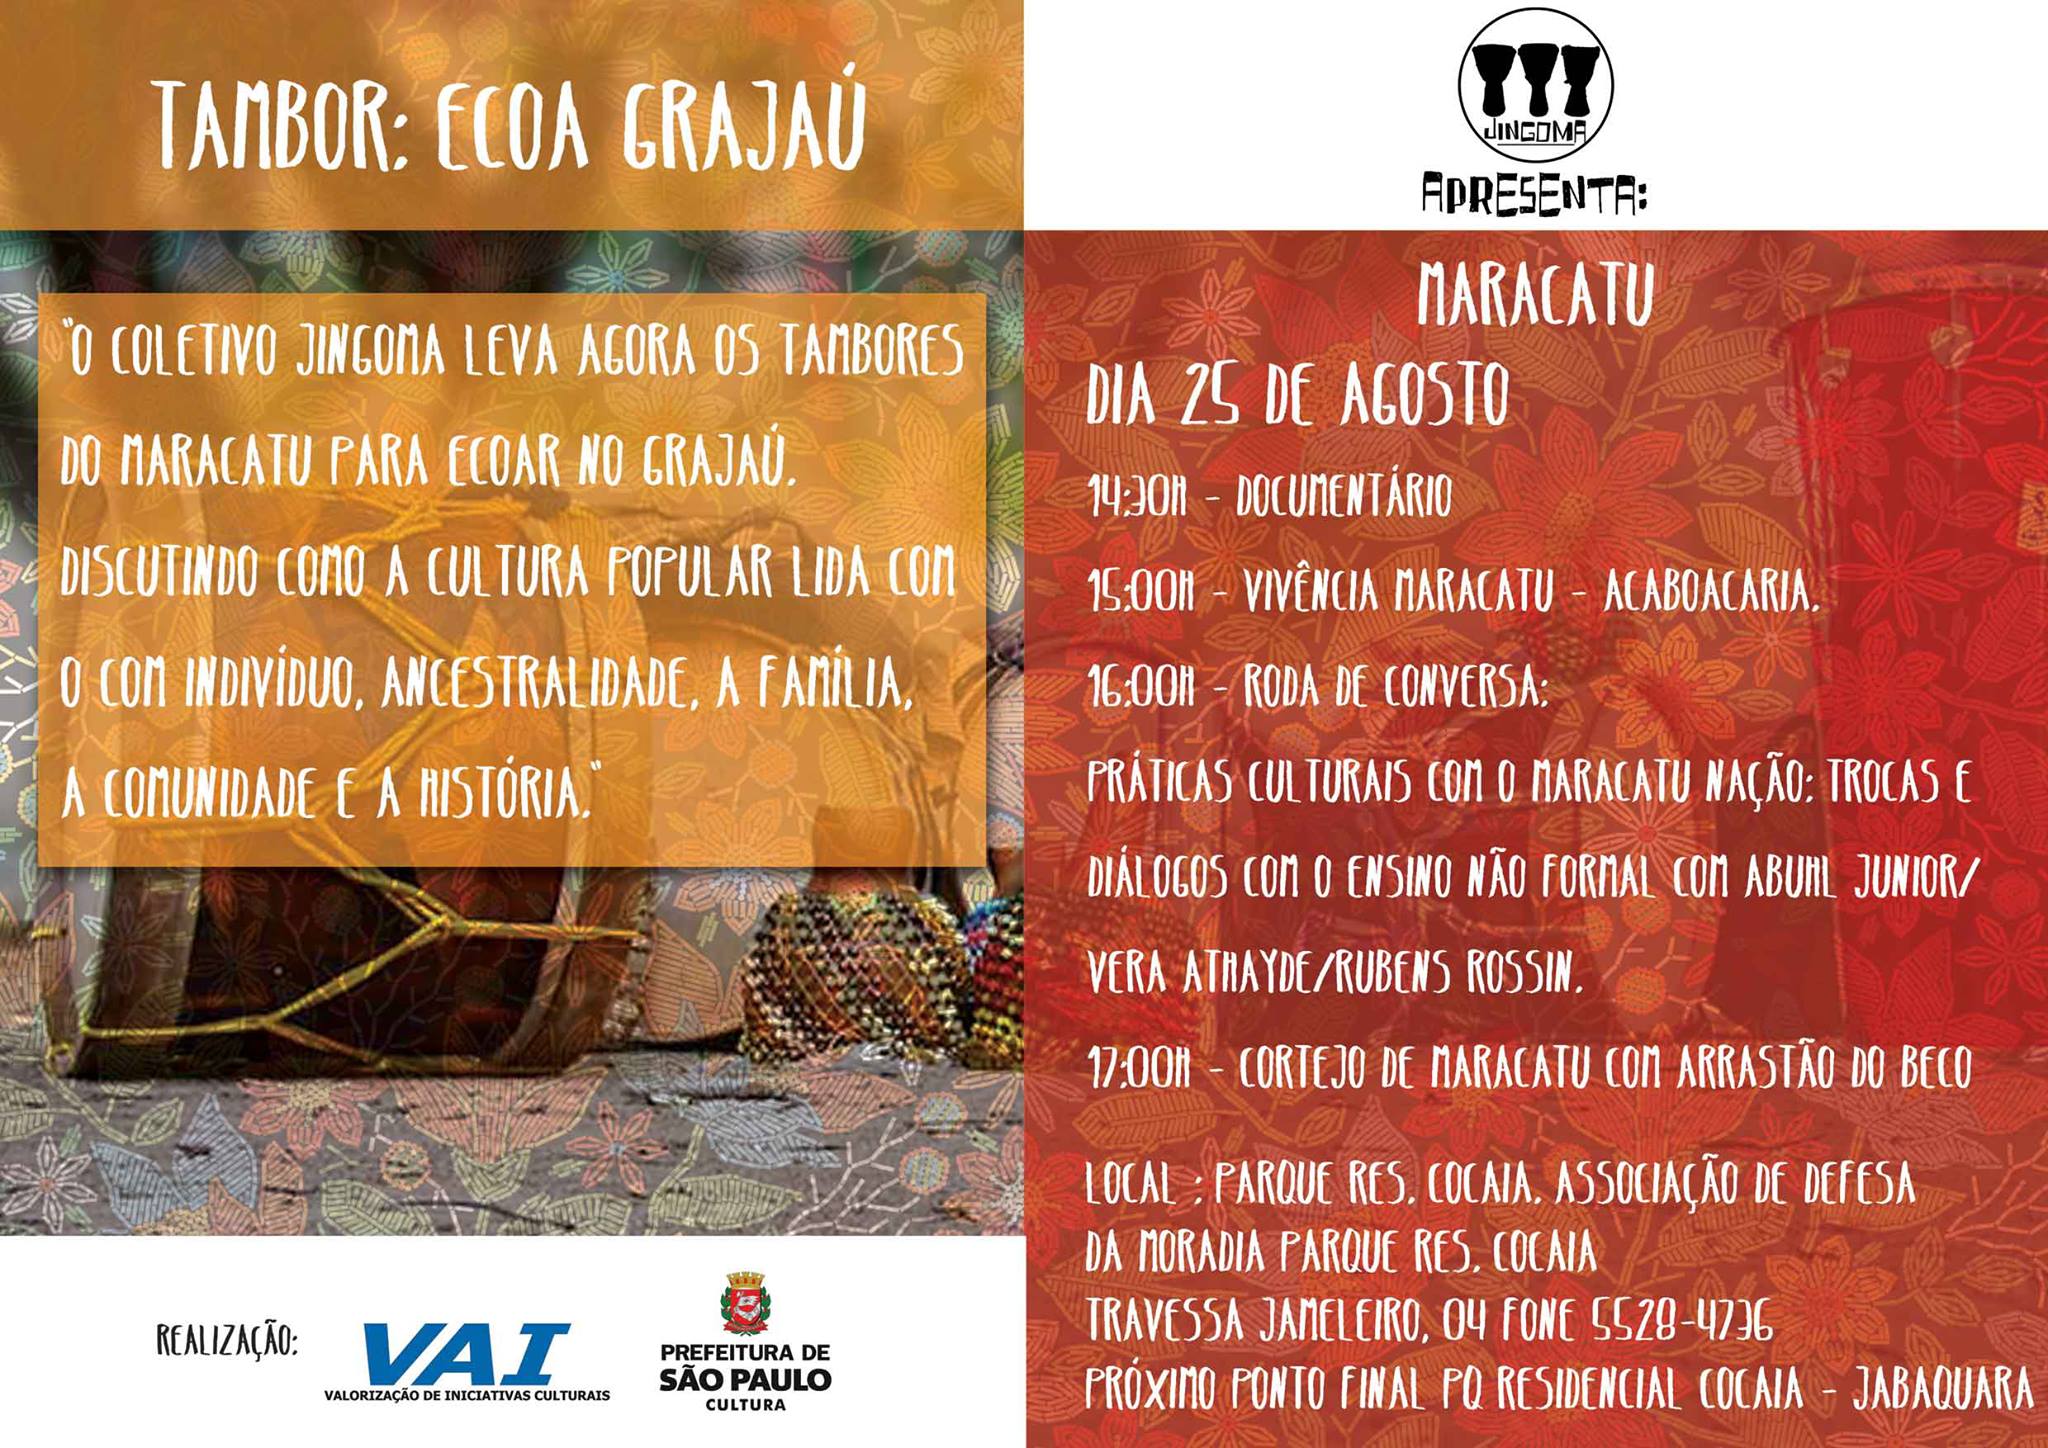 O Coletivo Jingoma leva agora os tambores do Maracatu do Arrastão do Beco para ecoar no Grajaú.Discutindo como a cultura popular lida com o com indivíduo, ancestralidade, a família, a comunidade e a história.